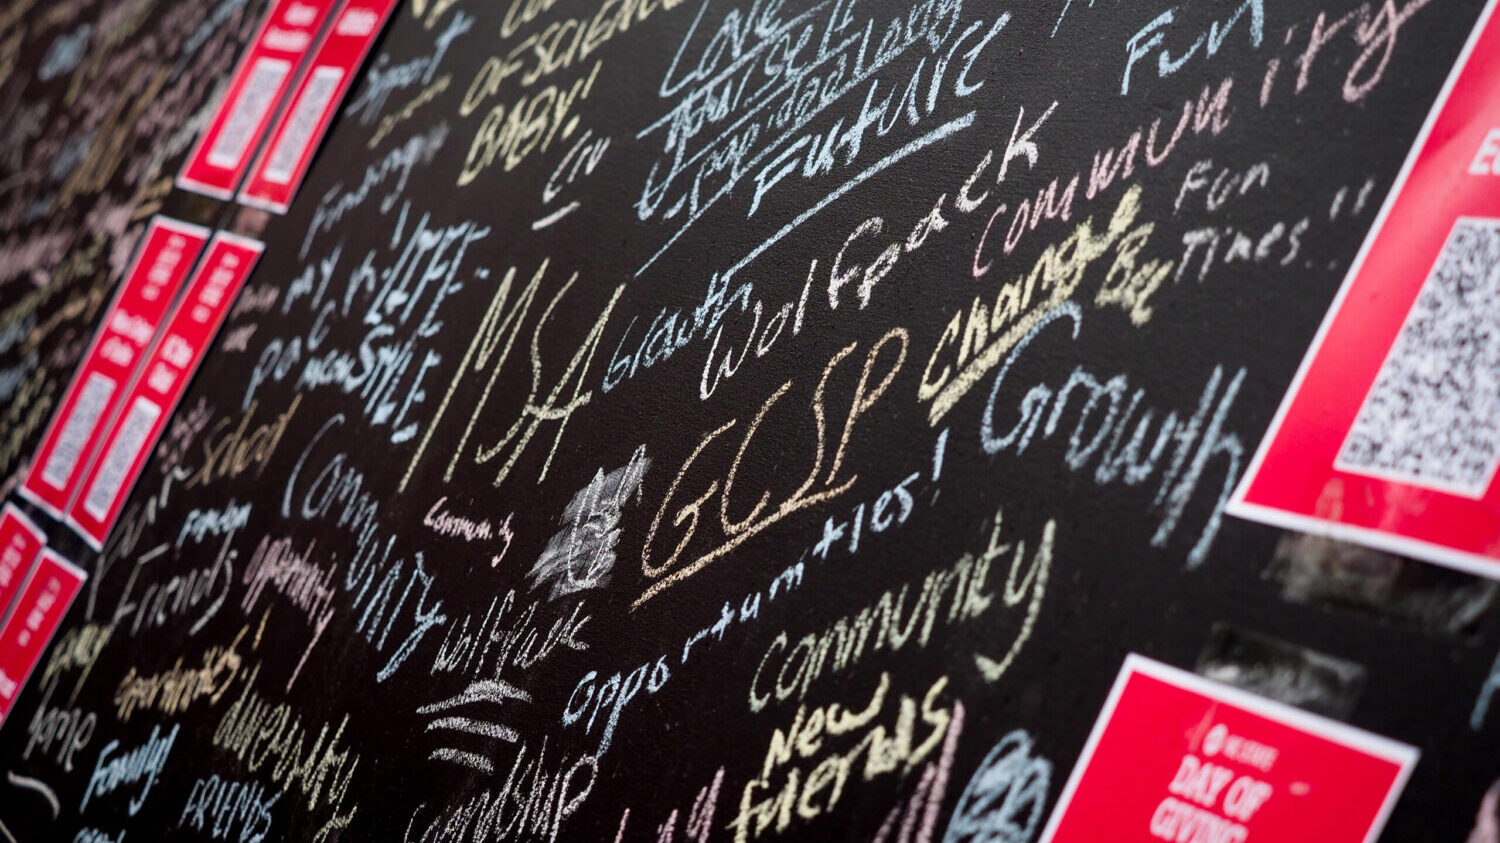 黑板上写满了学生们积极的话语，分享北卡州立大学对他们的意义